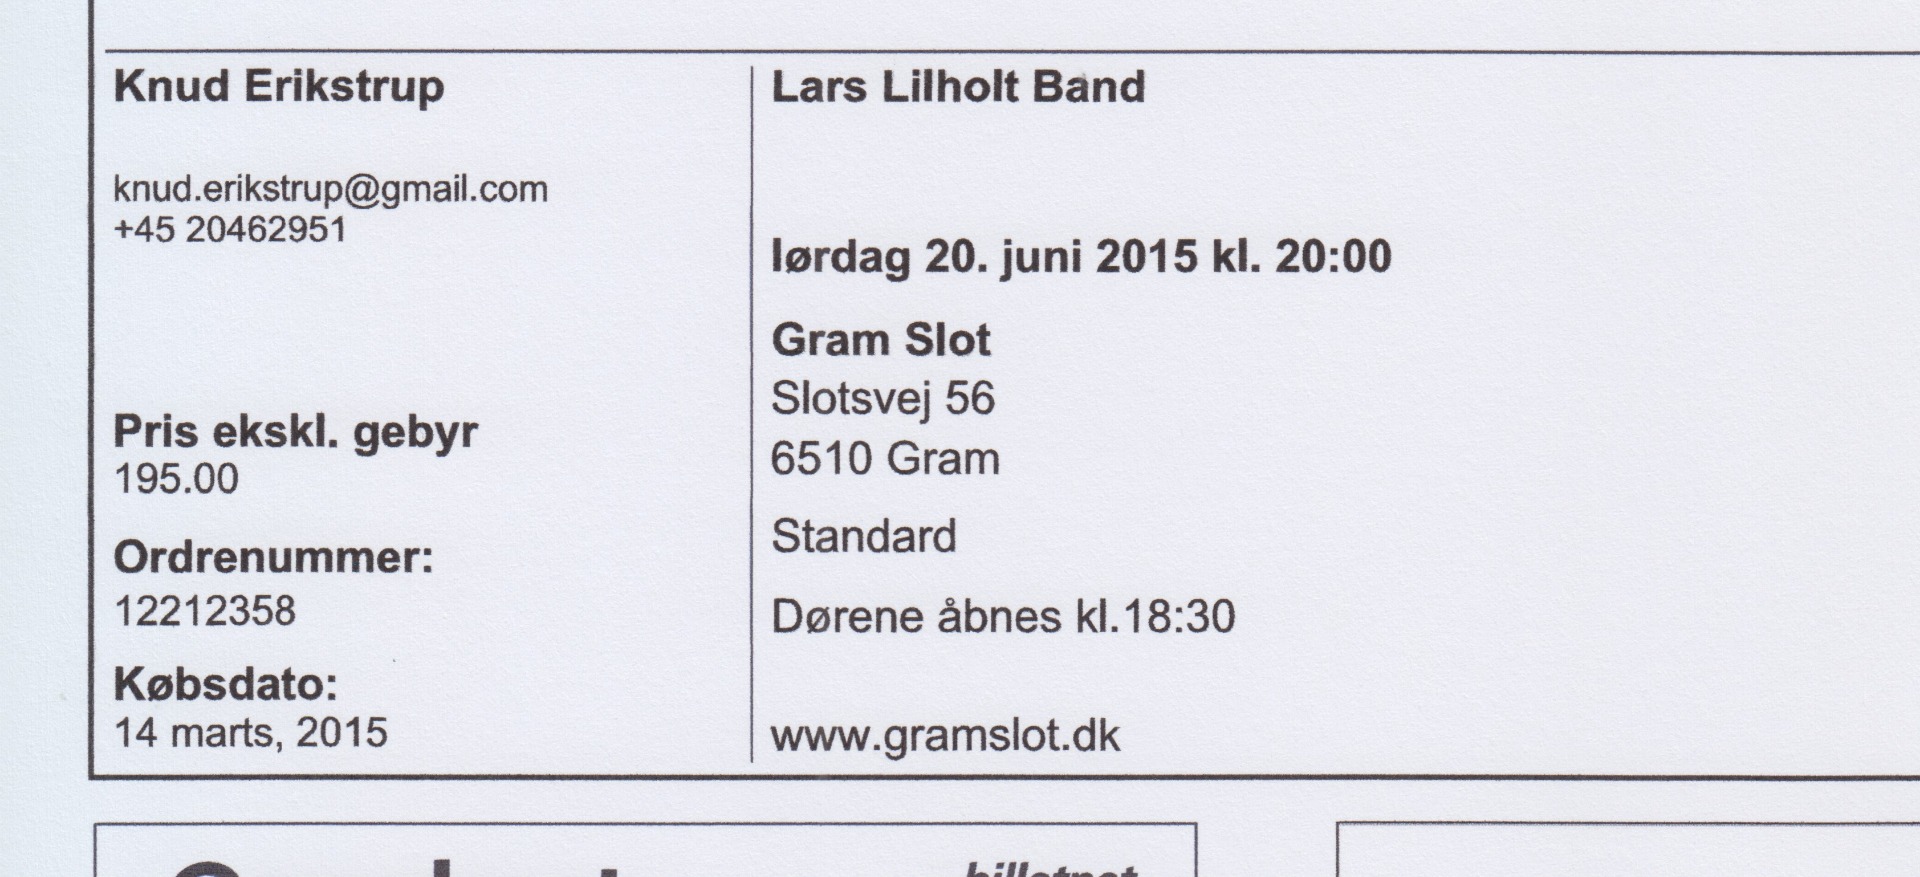 20. juni 2015 Koncert Lars Lilholt